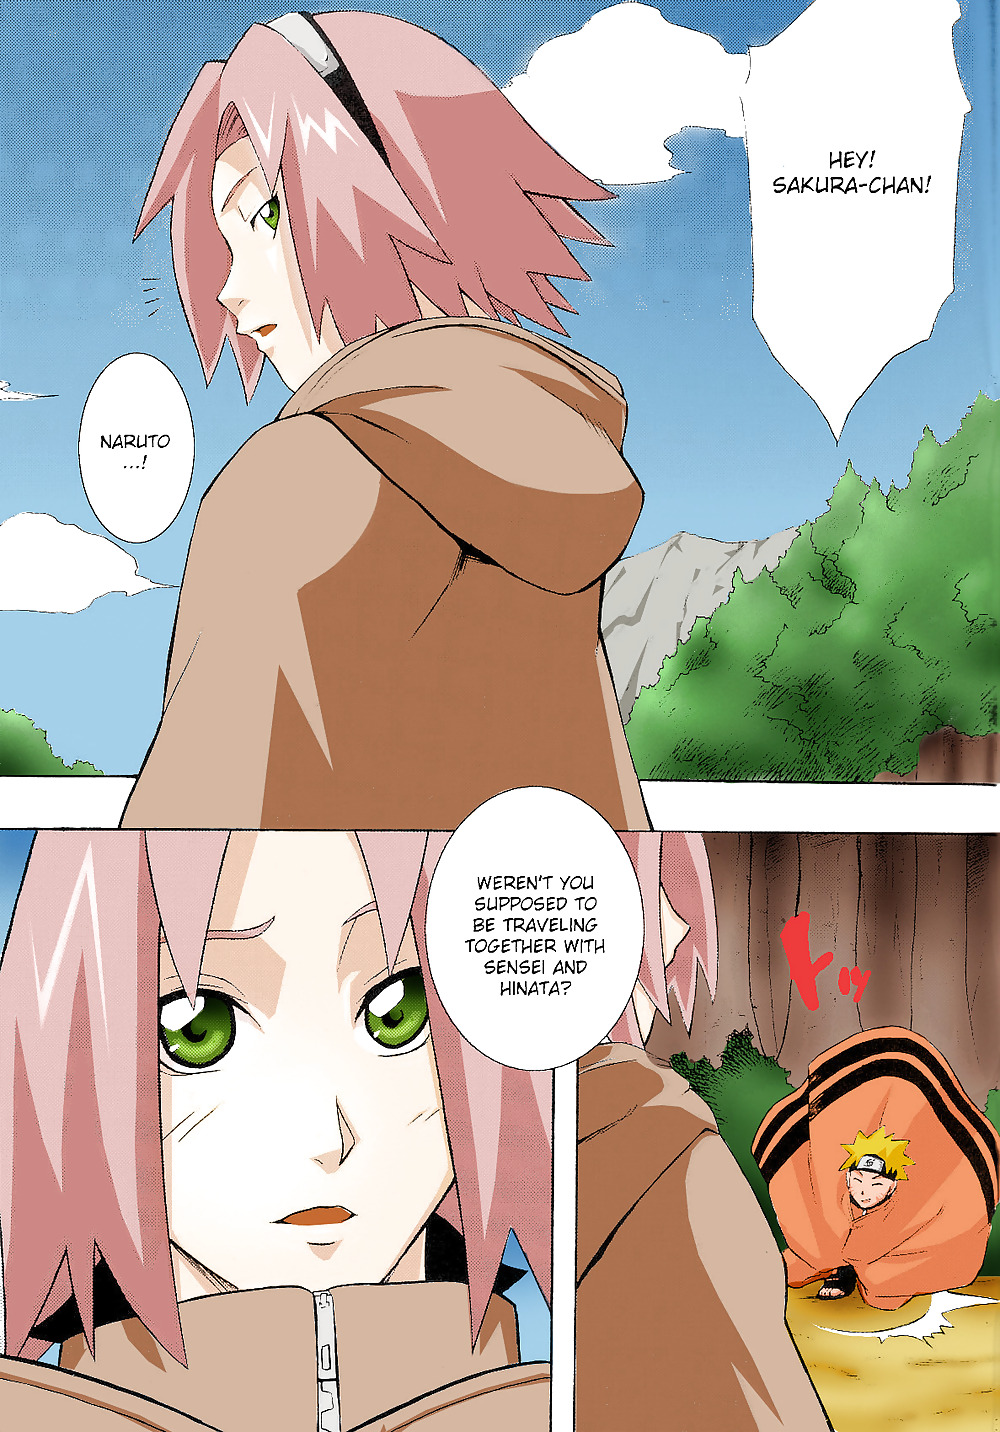 Naruto x Sakura x Hinata (Comic) #19974303